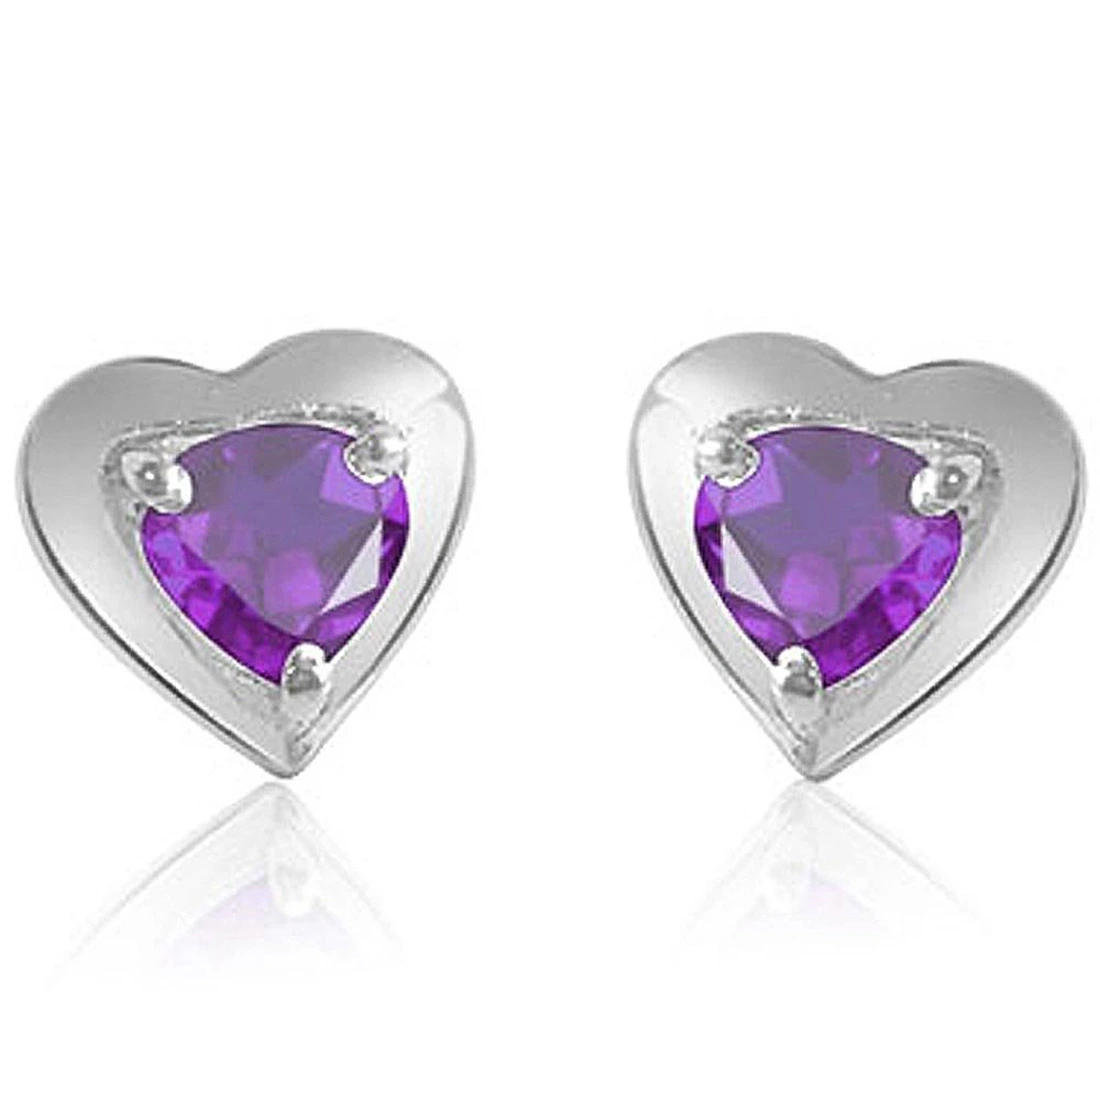 Loving You - Heart Shaped Purple Amethyst & Sterling Silver Earrings for Women (SDS50)